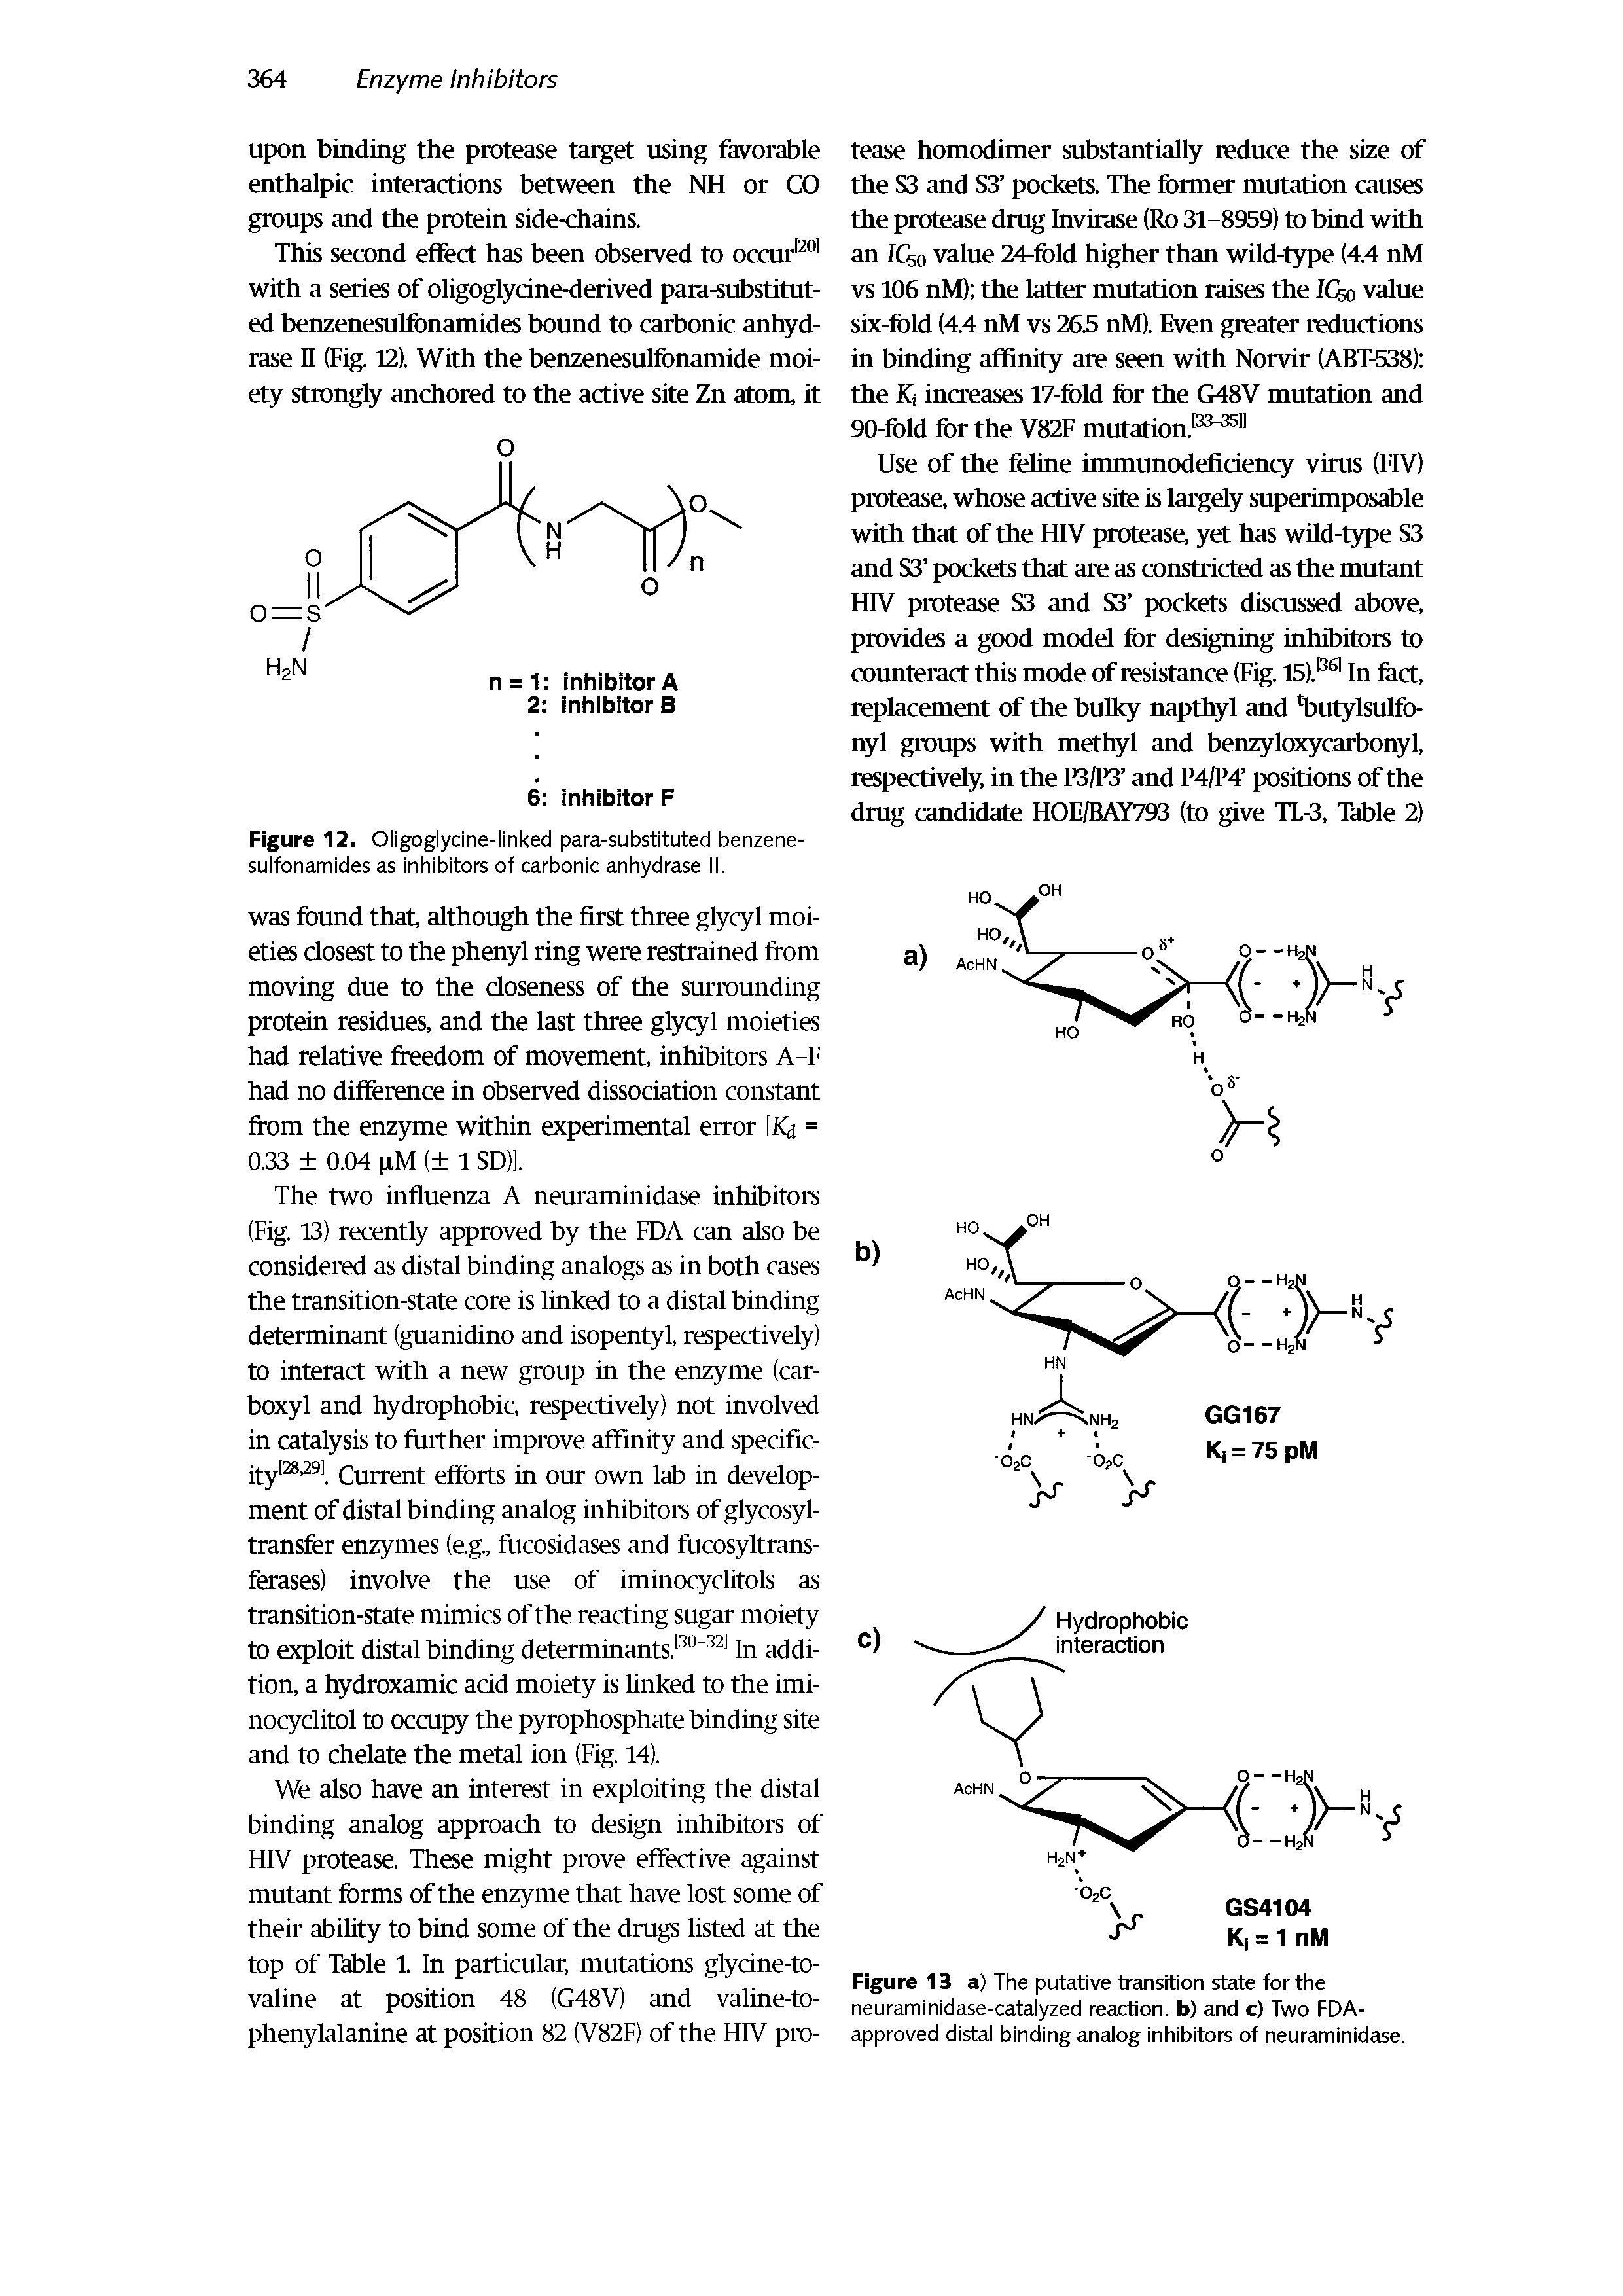 Figure 12. Oligoglycine-linked para-substituted benzenesulfonamides as inhibitors of carbonic anhydrase II.